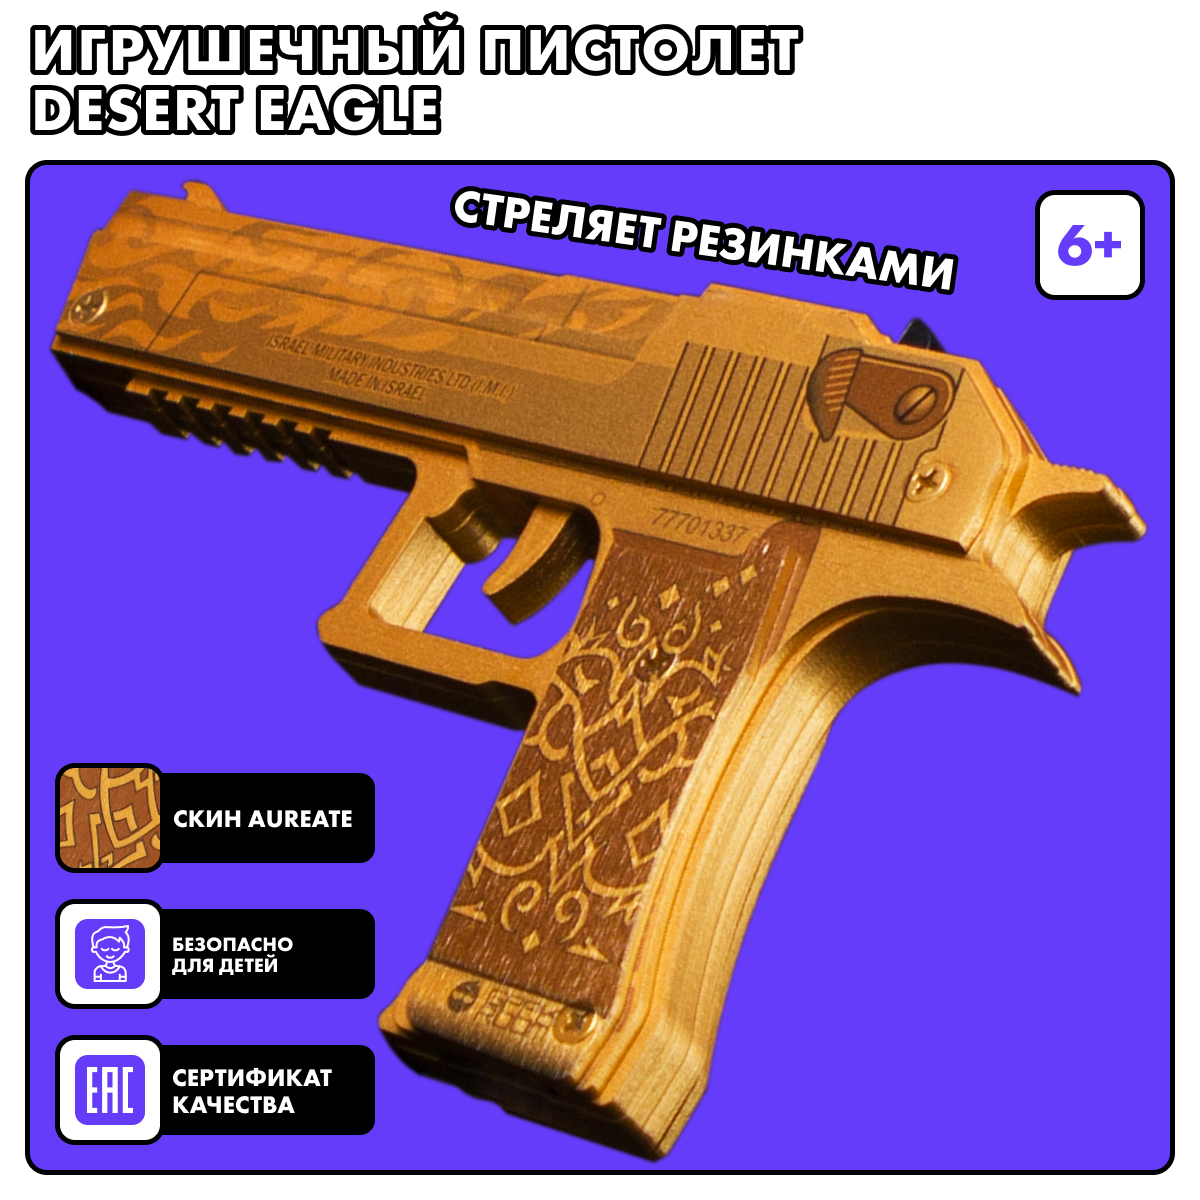 Резинкострел игрушечный Geekroom Деревянный пистолет Desert eagle Aureate пистолет desert eagle gold с металлическими элементами